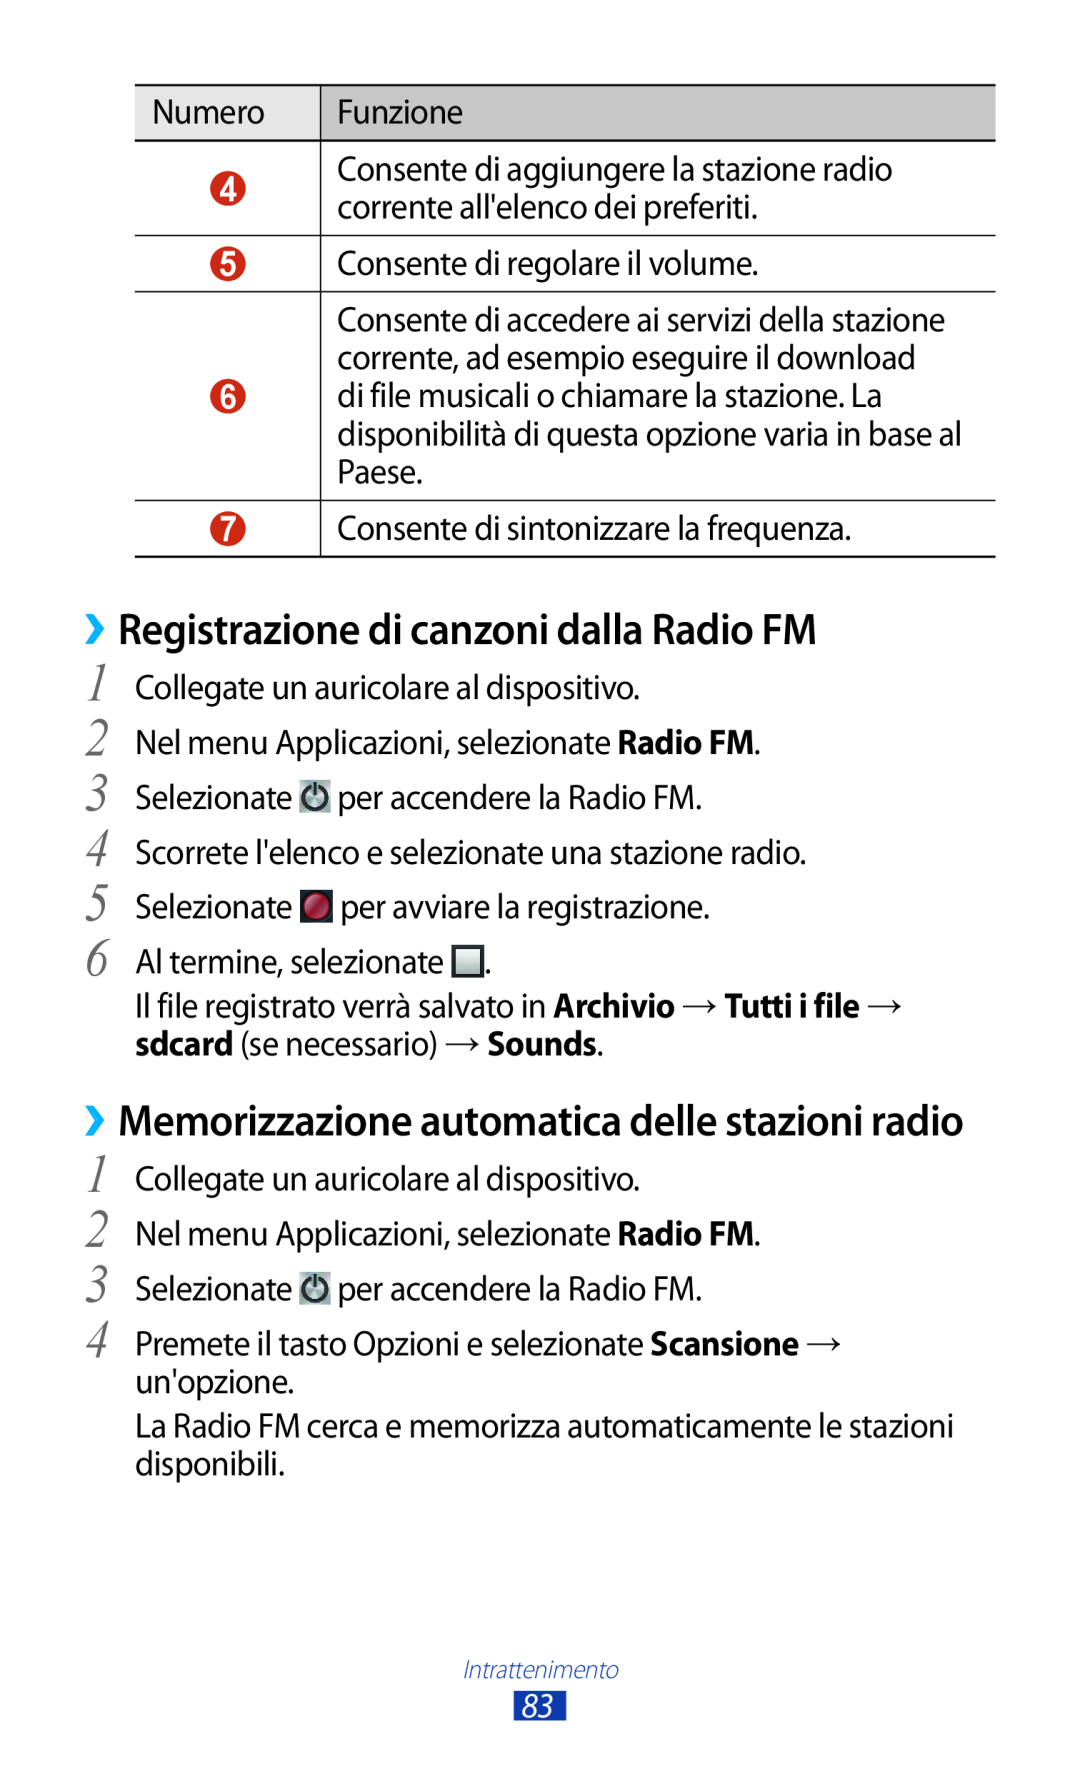 Samsung GT-S7560UWATIM manual ››Registrazione di canzoni dalla Radio FM, ››Memorizzazione automatica delle stazioni radio 